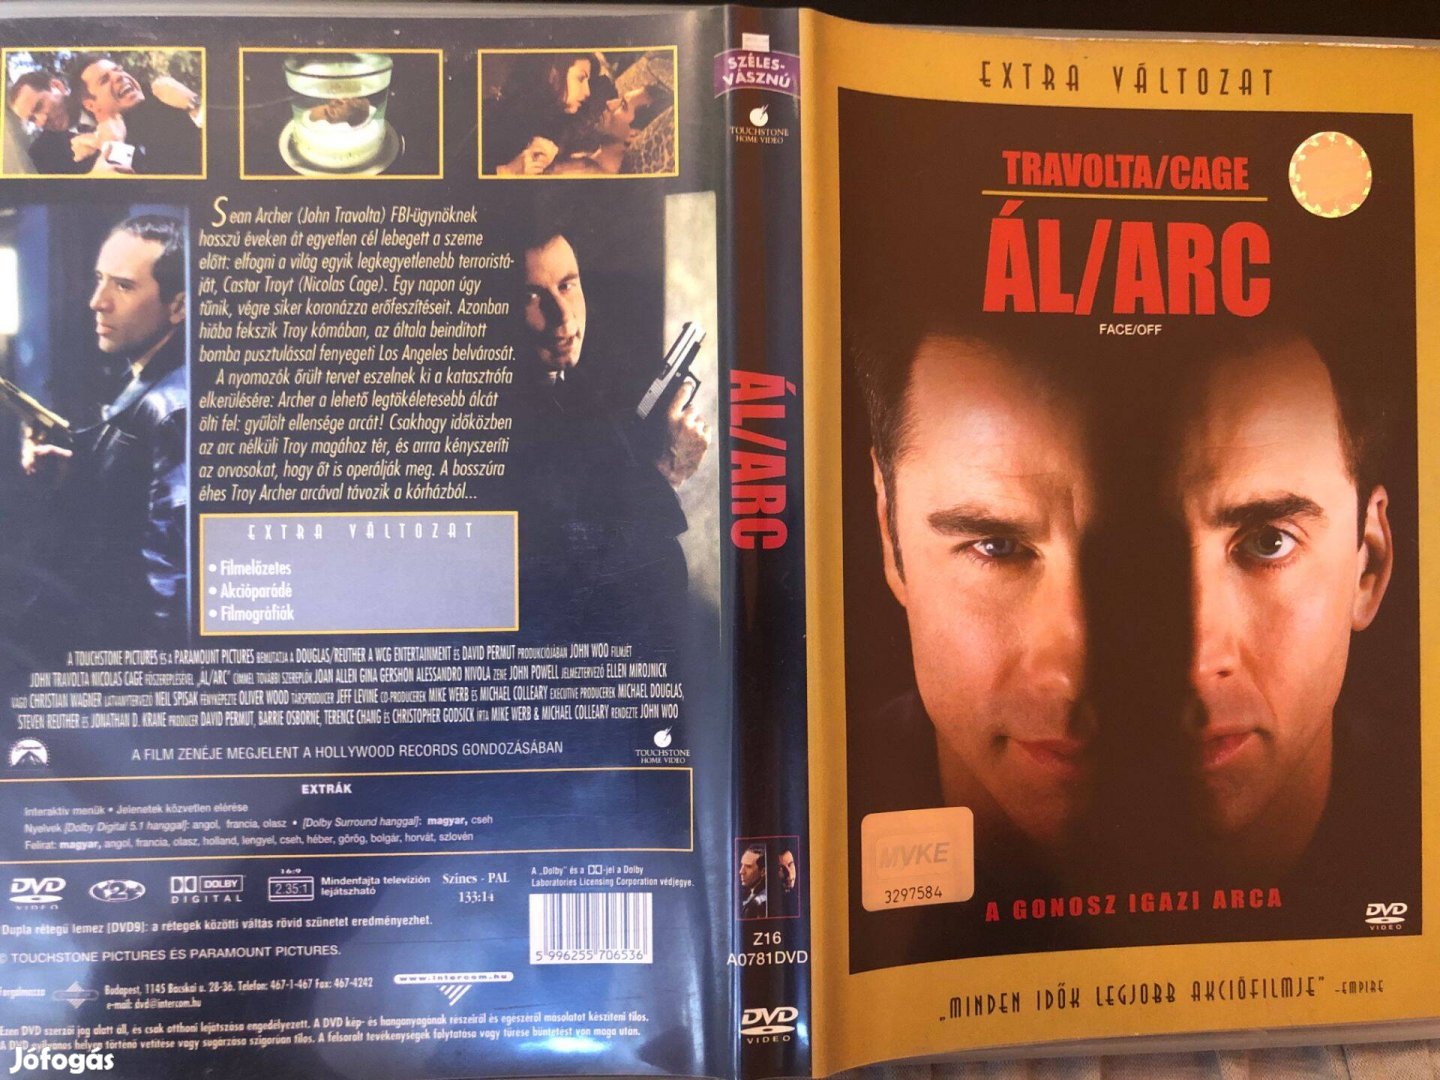 Álarc (karcmentes, extra változat, John Travolta) DVD